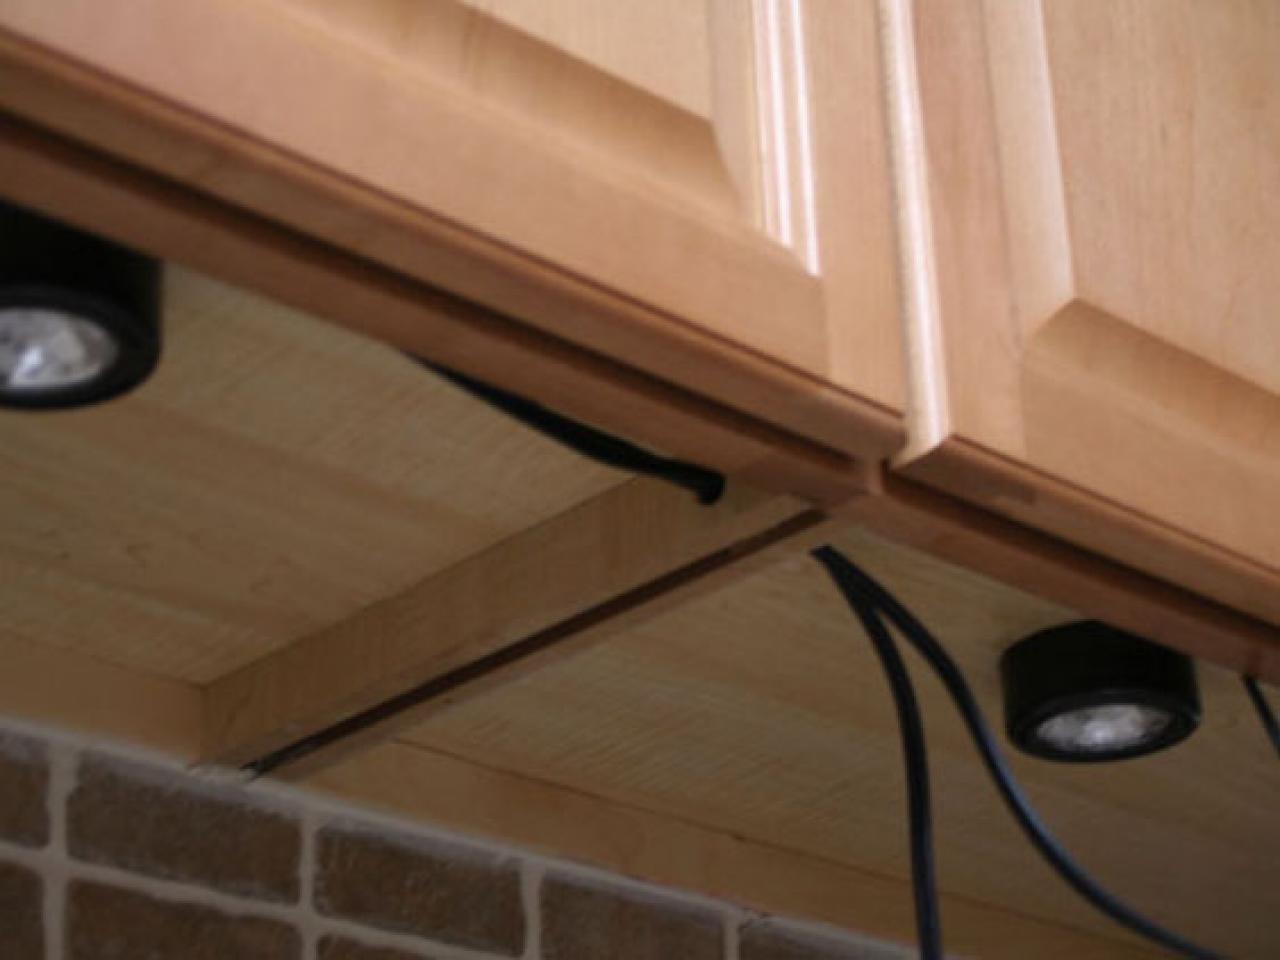 installing under-cabinet lighting | hgtv